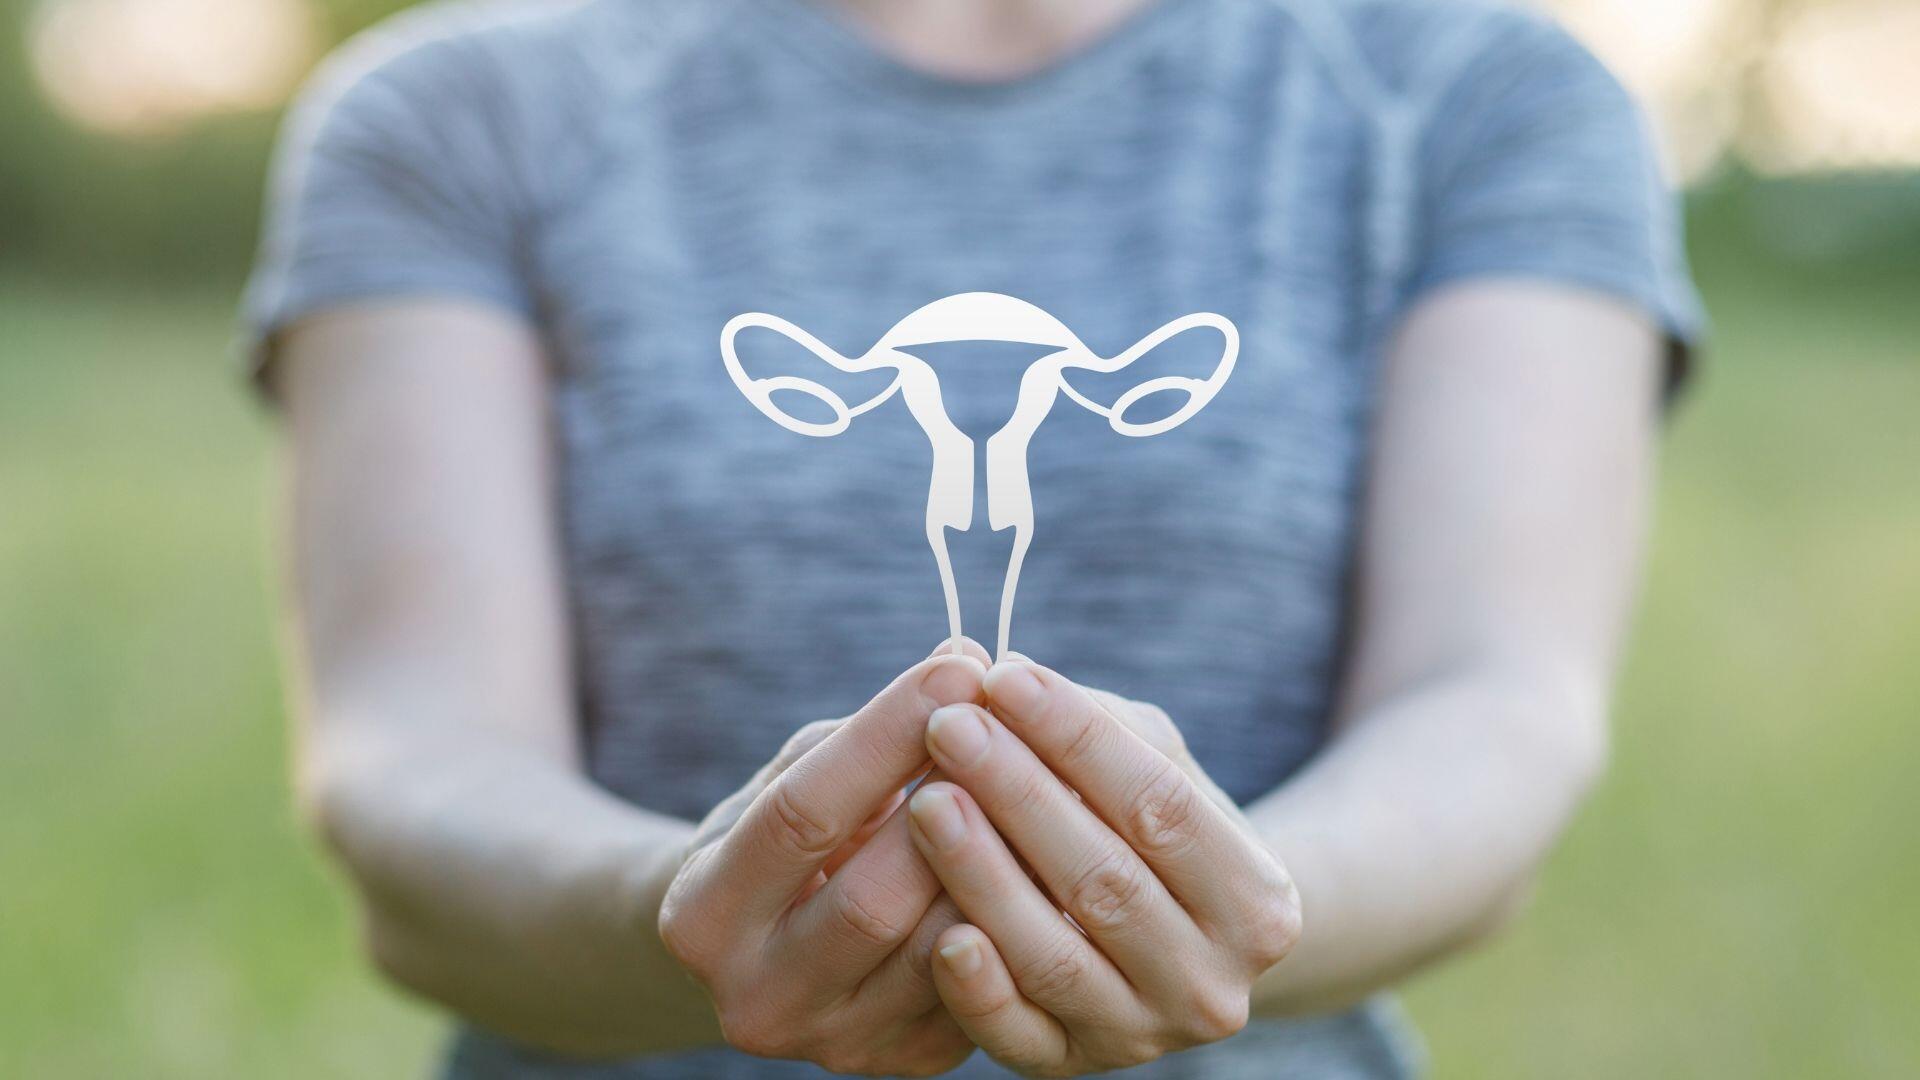 uterine-fibroids-pain-treatment-centers